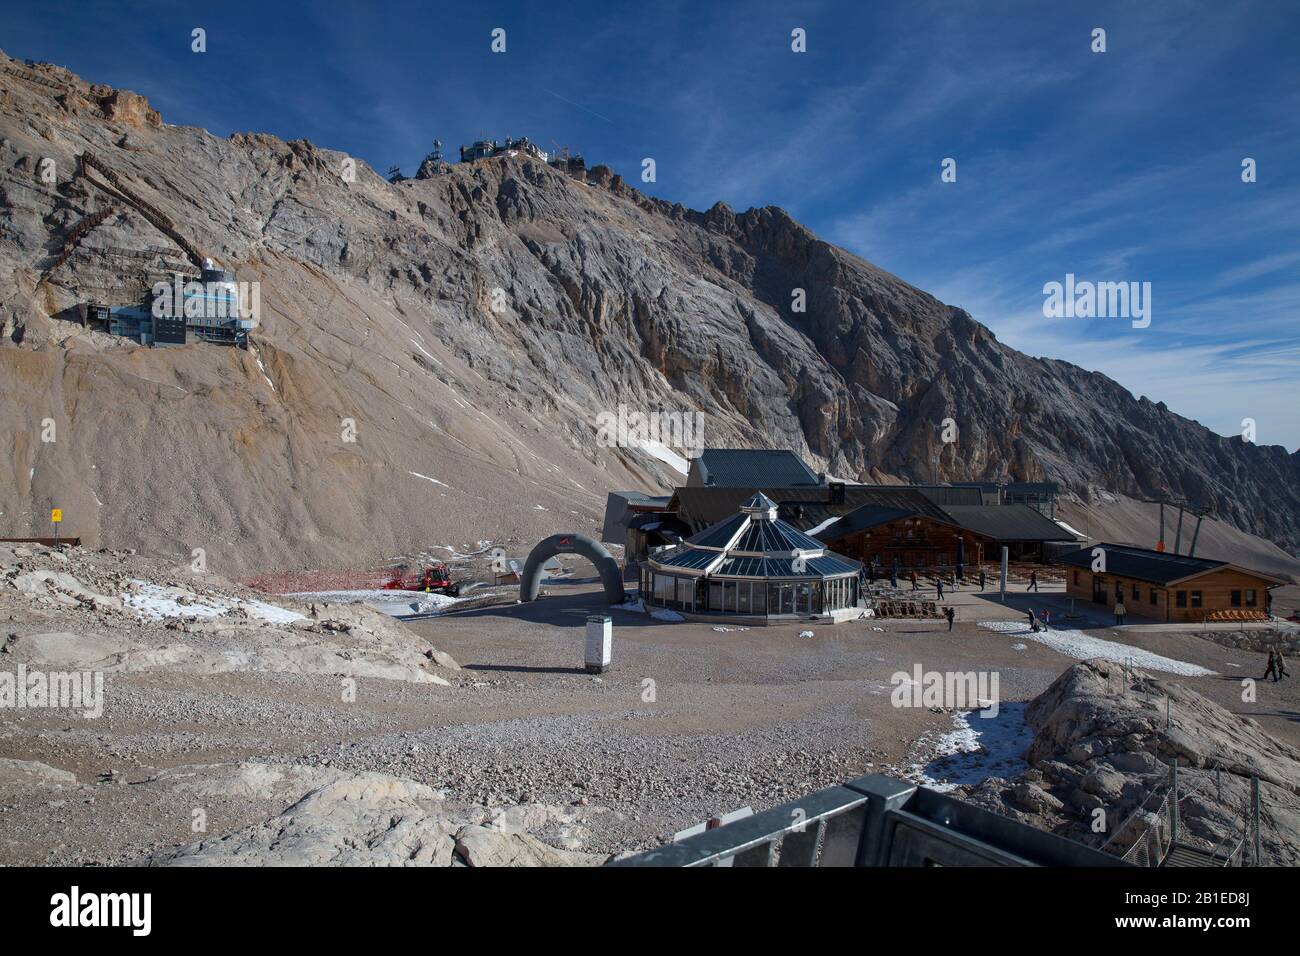 Sommet de la Zugspitze 2964 m, Garmisch-Partenkirchen, Baviere, Allemagne. Stock Photo